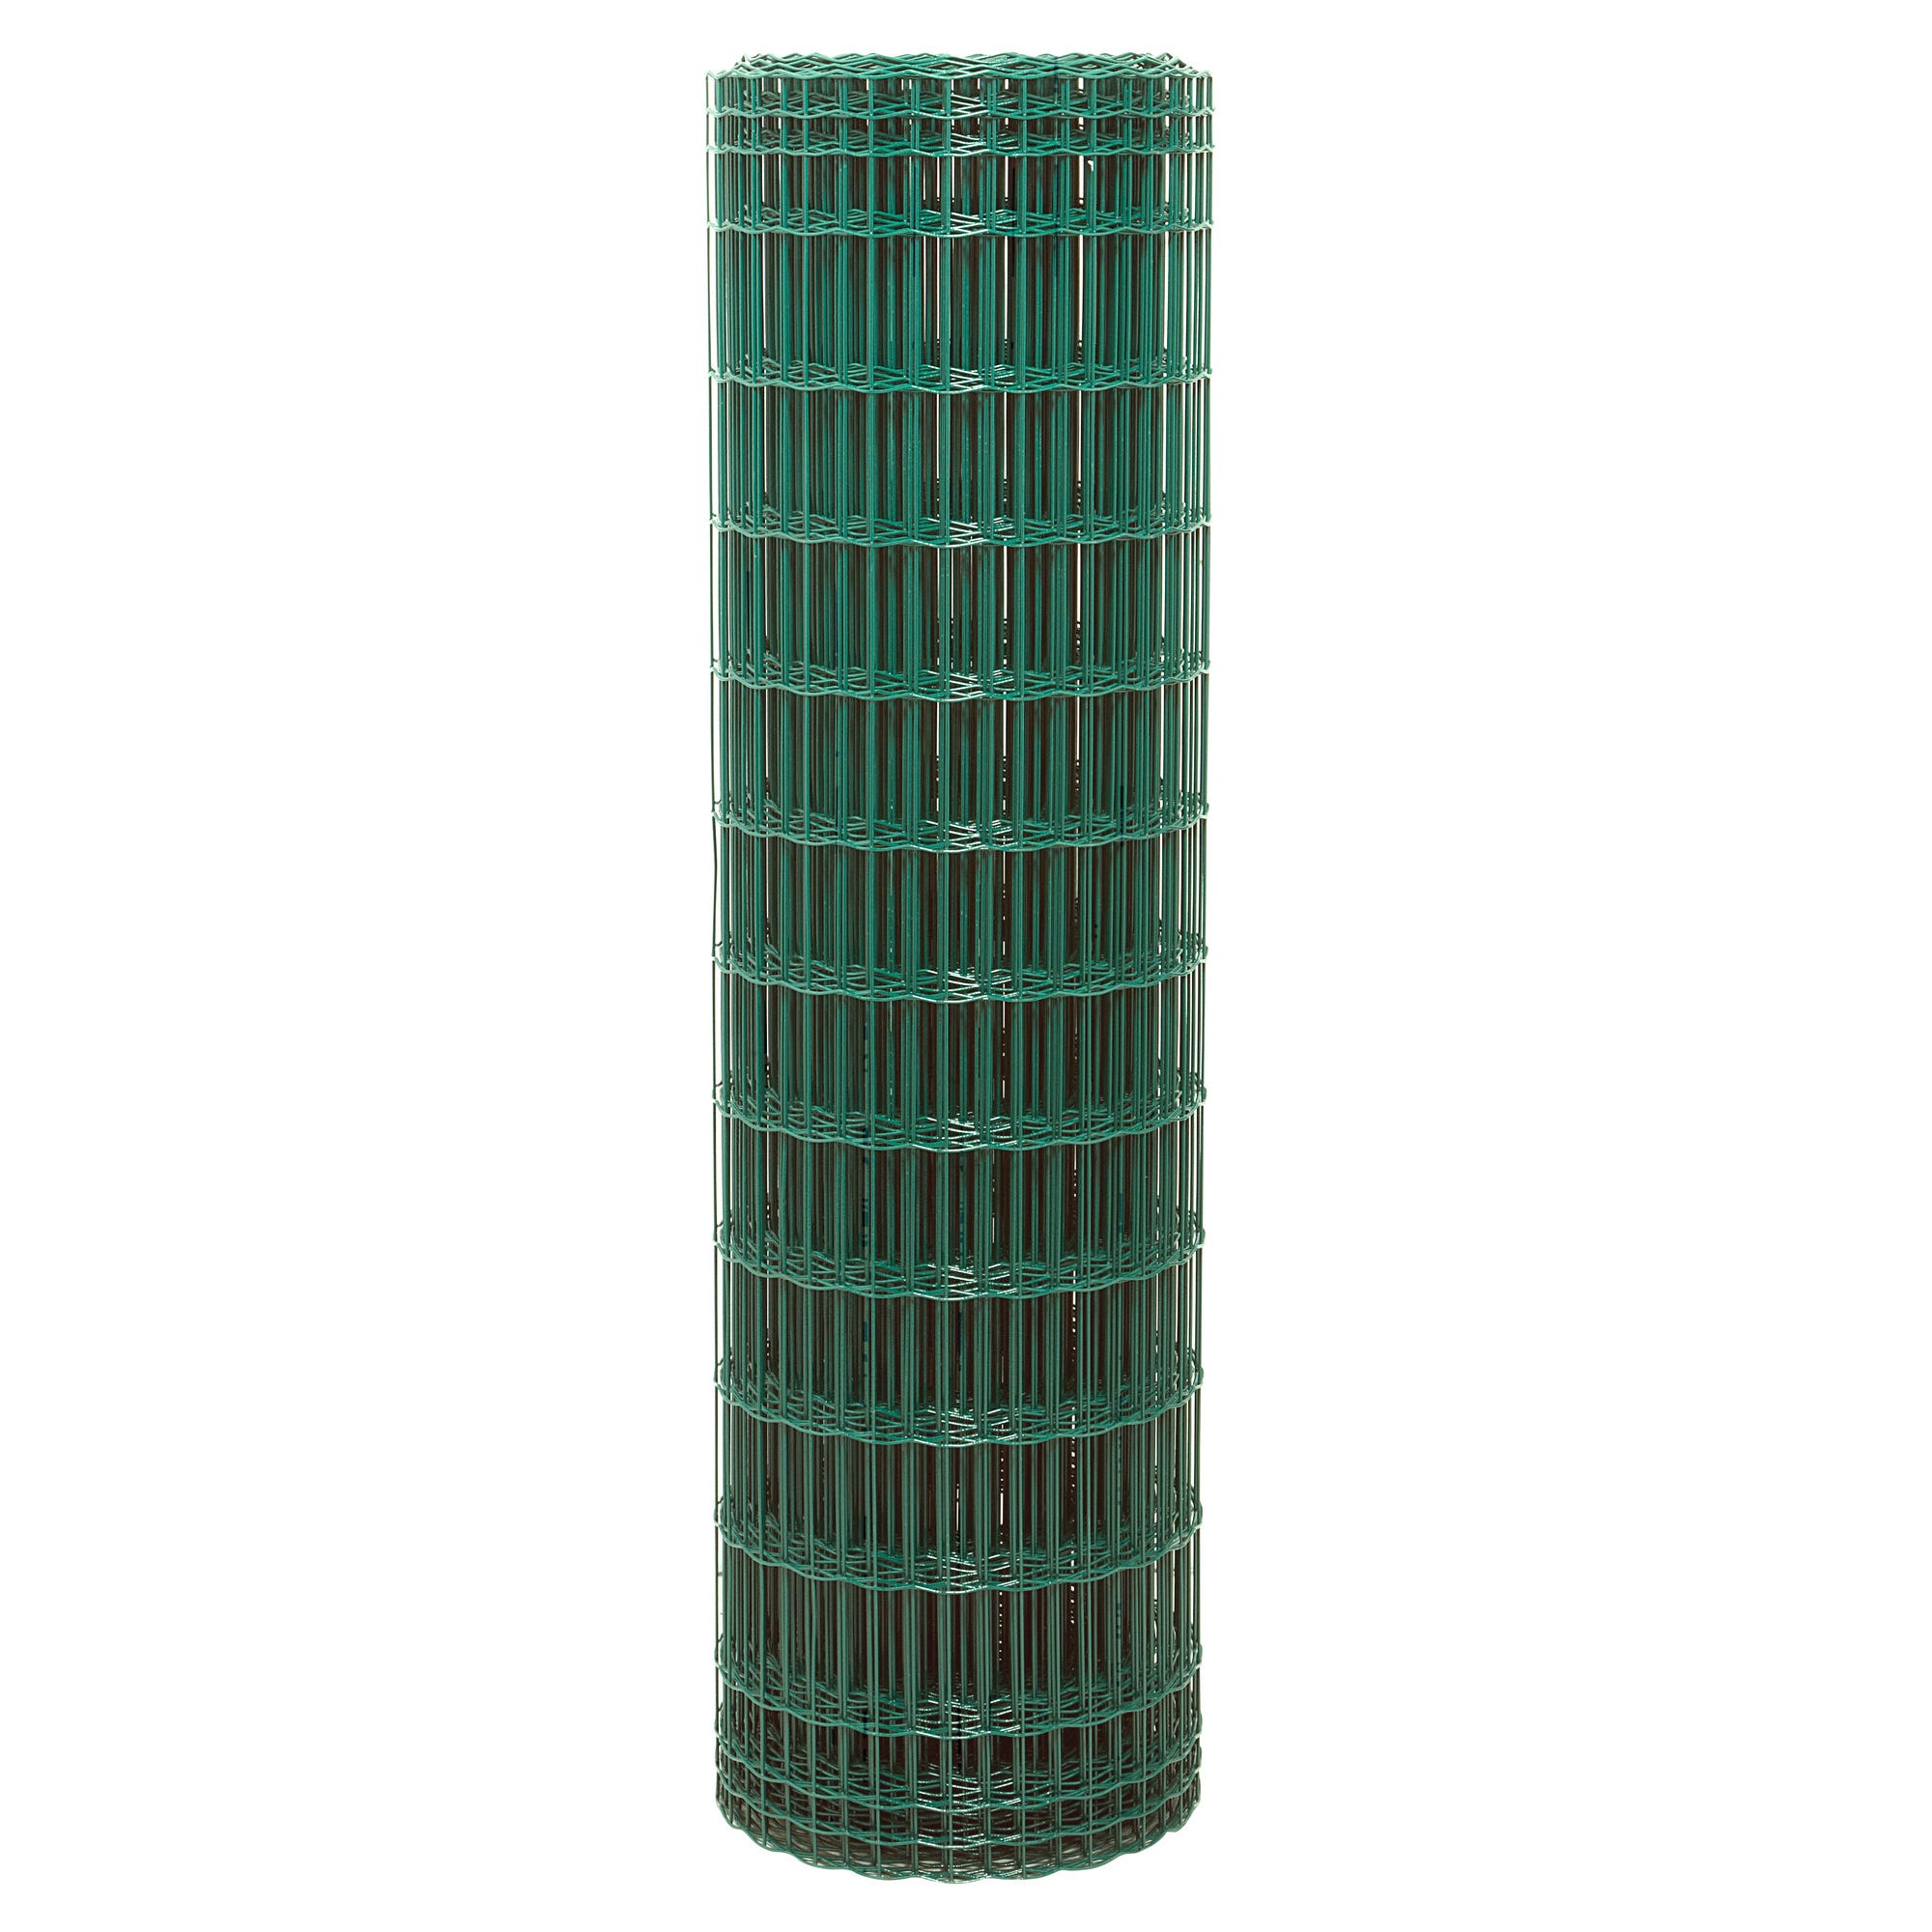 Grillage soudé pro vert maille 100 x 50 mm H.120 cm x L.25 m 2